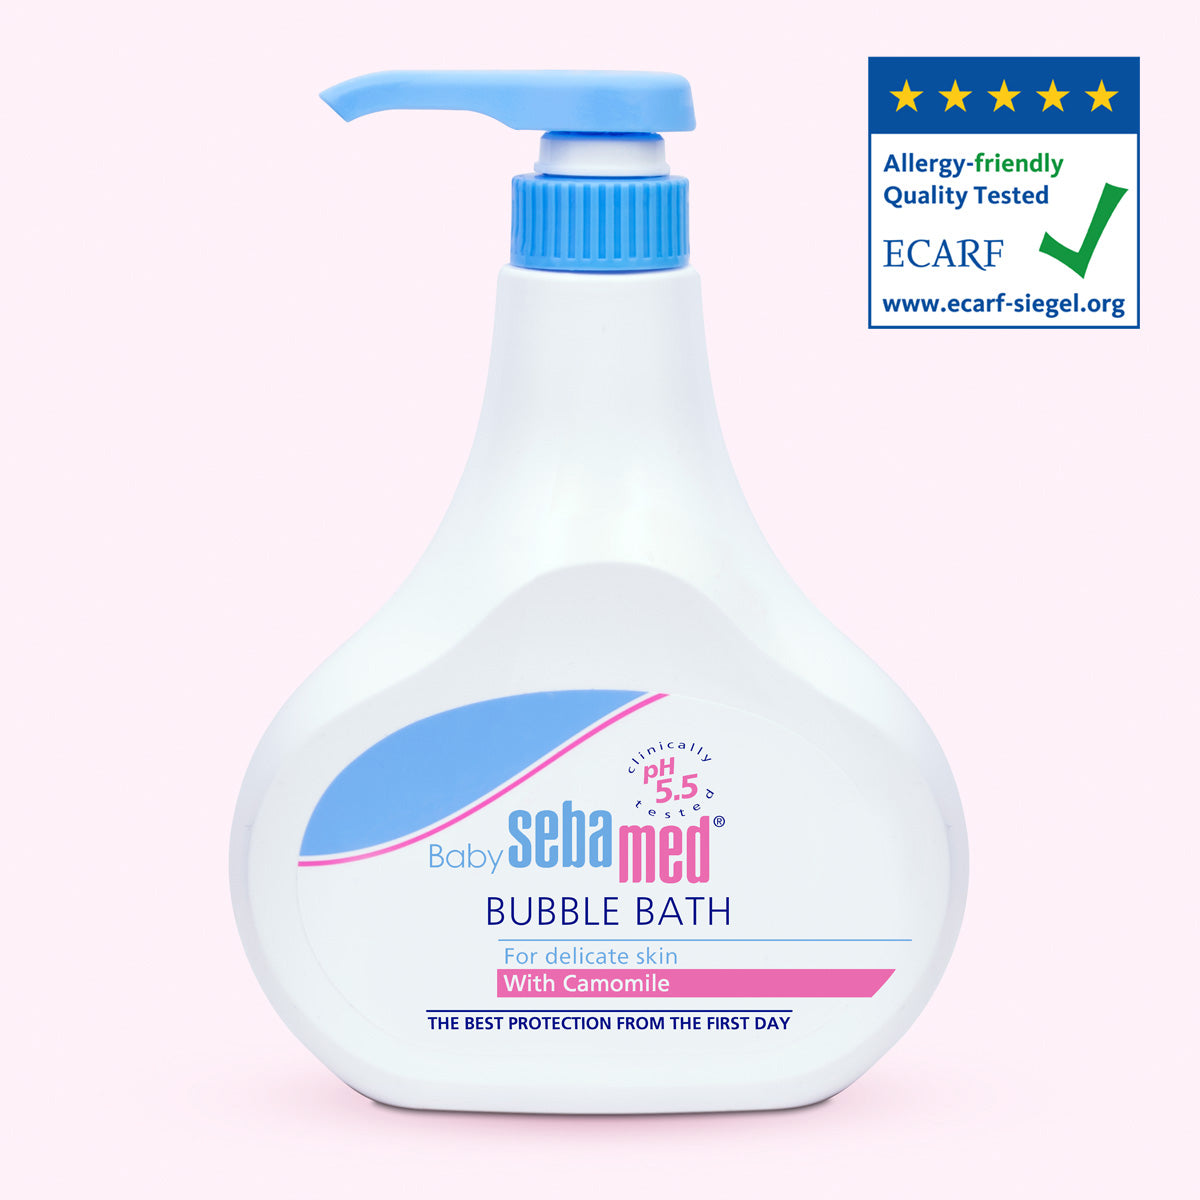 Baby Sebamed Bubble Bath 500ml